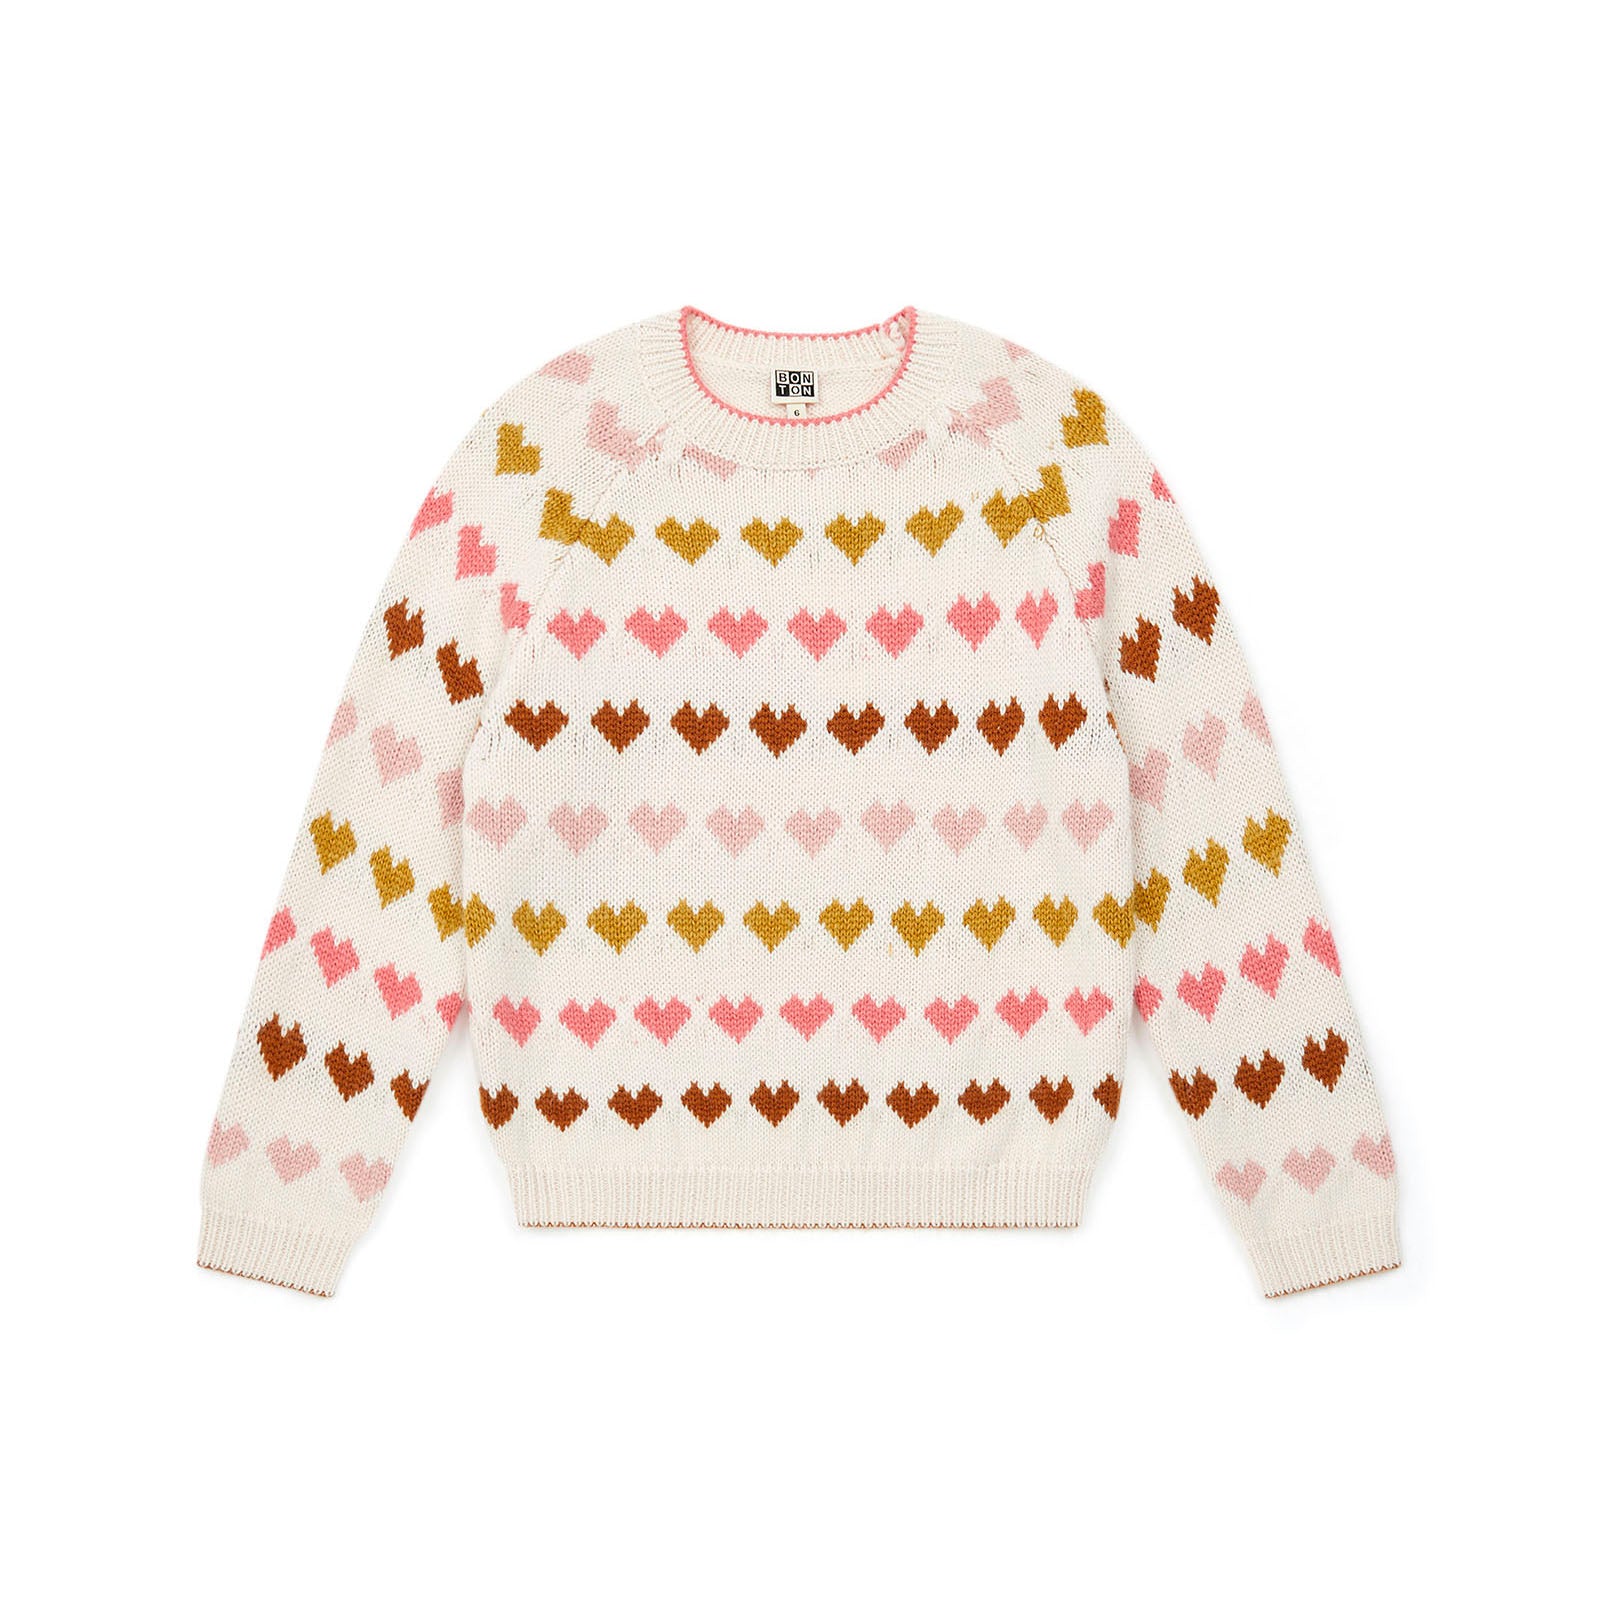 Girls White Heart Wool Sweater